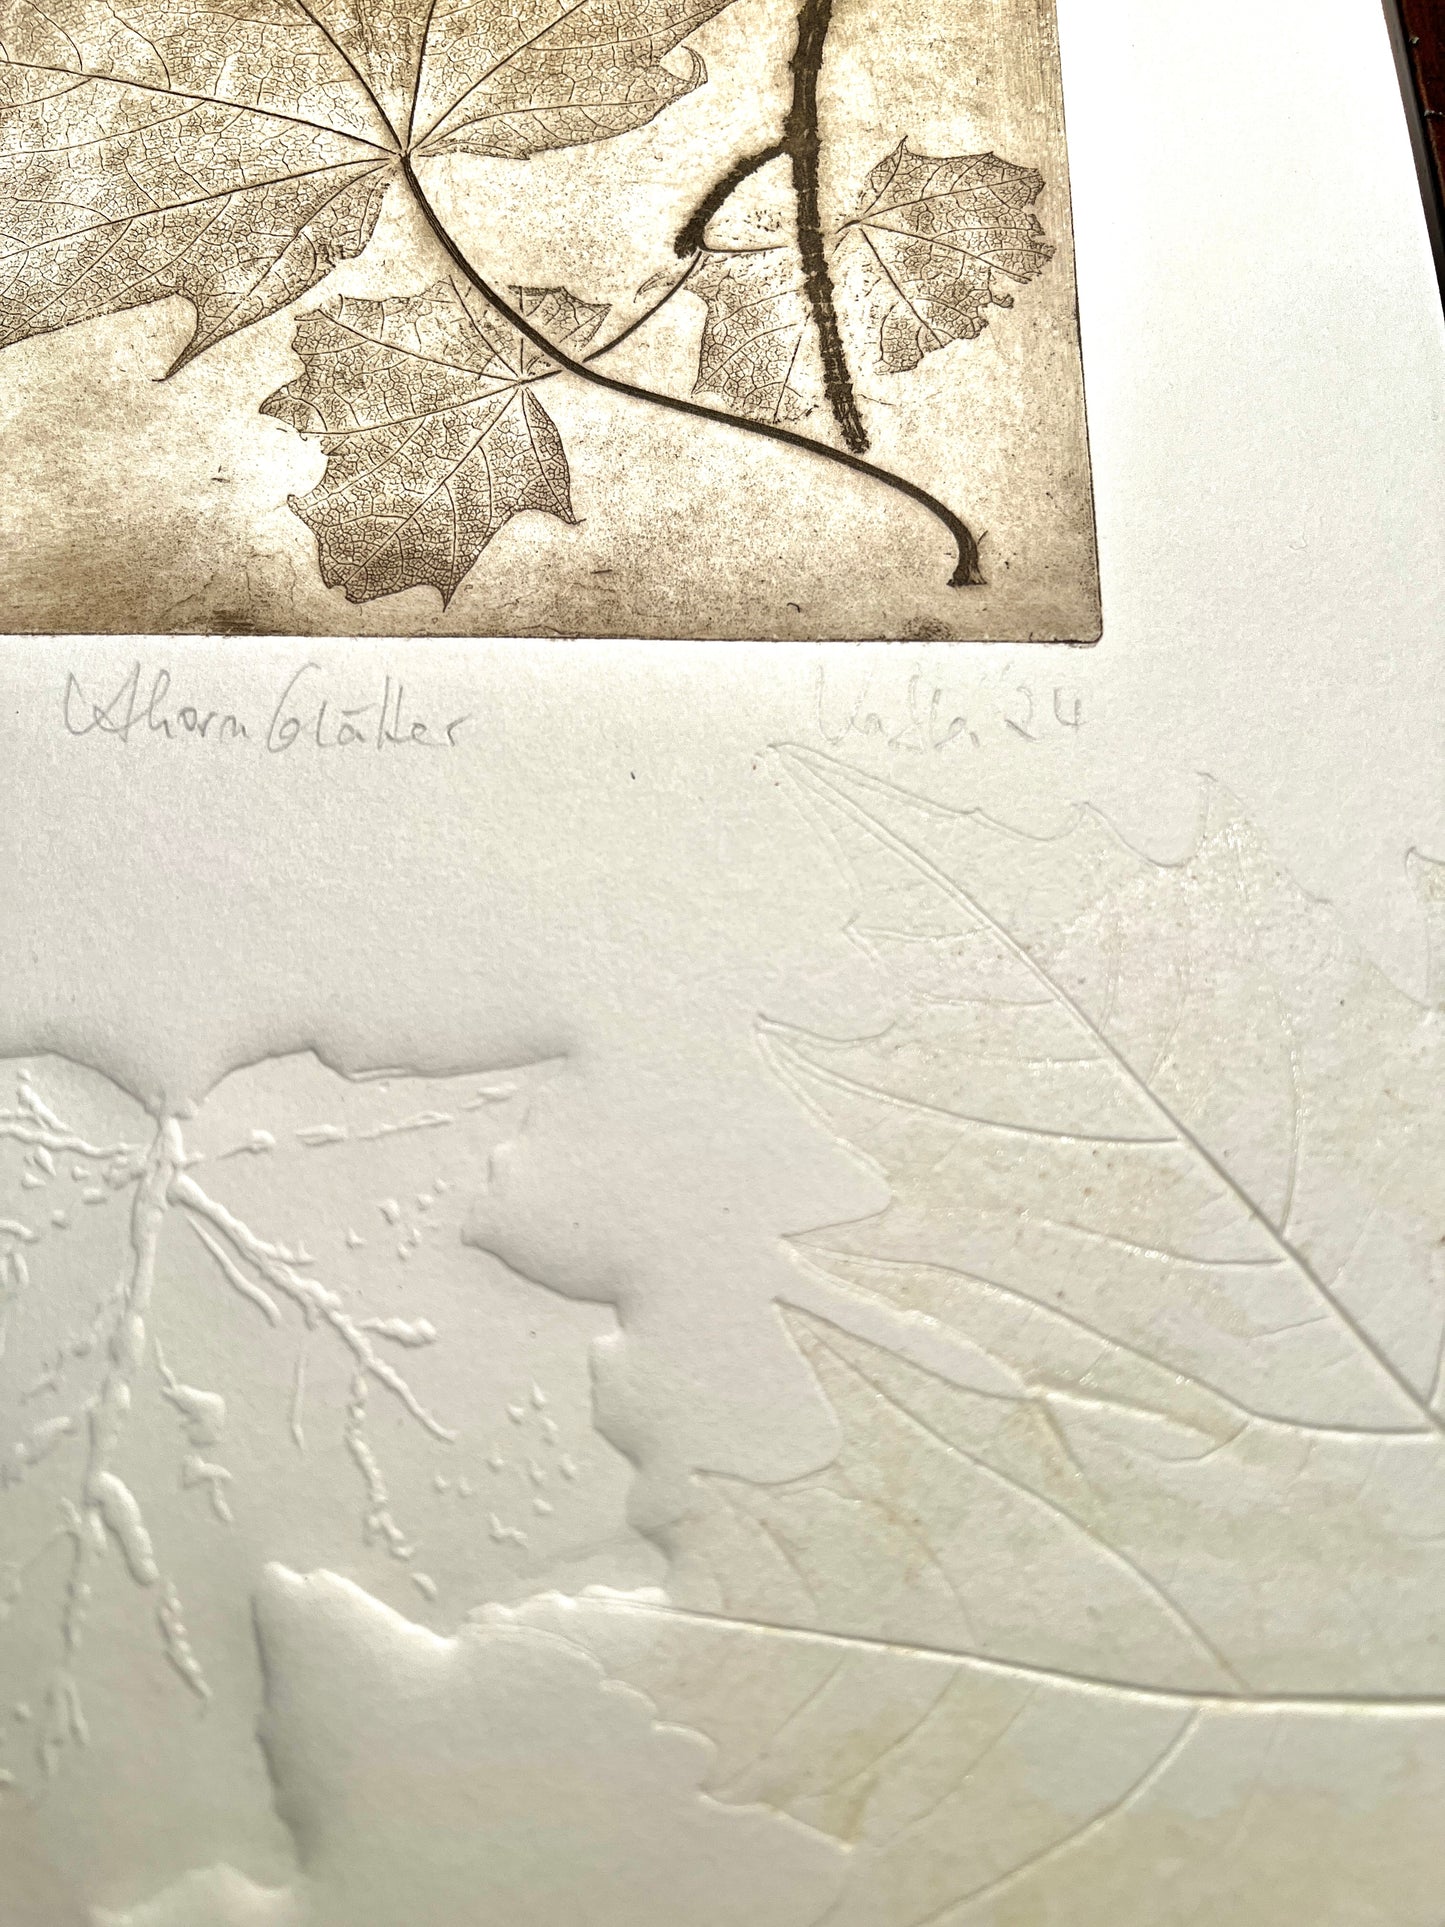 AHORN Originaldruckgrafik Radierung Vernis mou mit Prägungen 30x40 cm